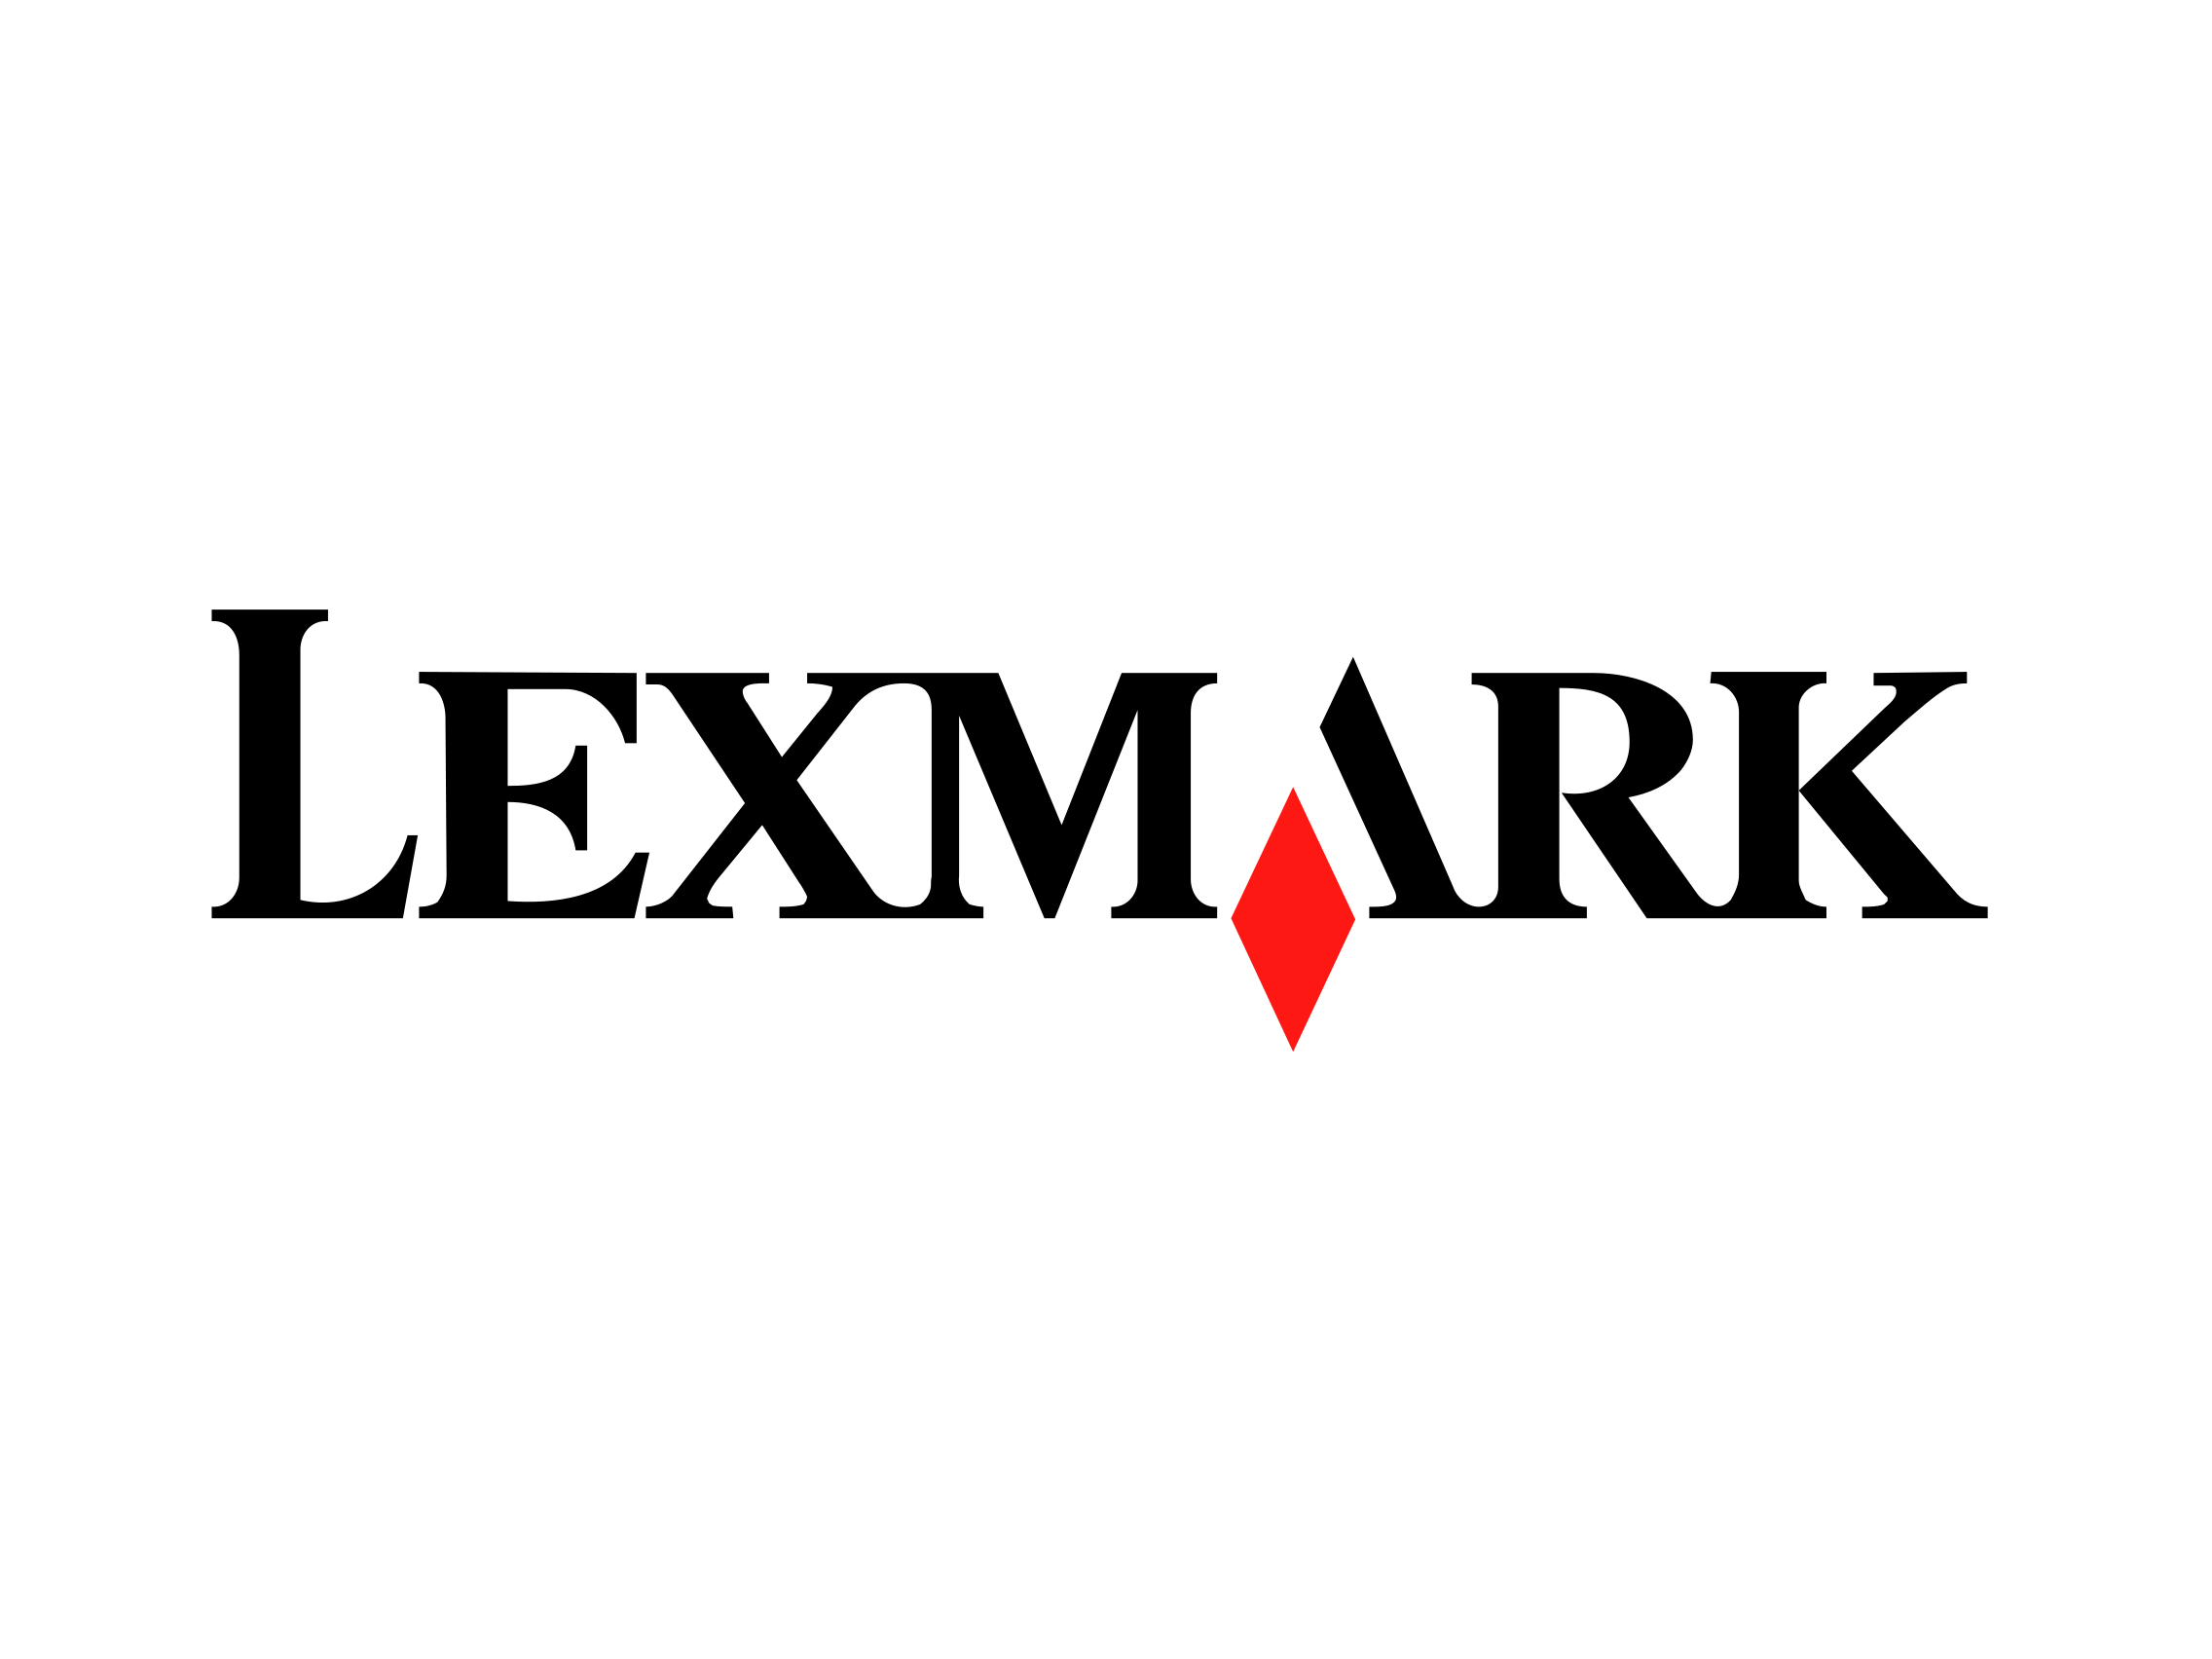 Lexmark Logo - Lexmark logo old